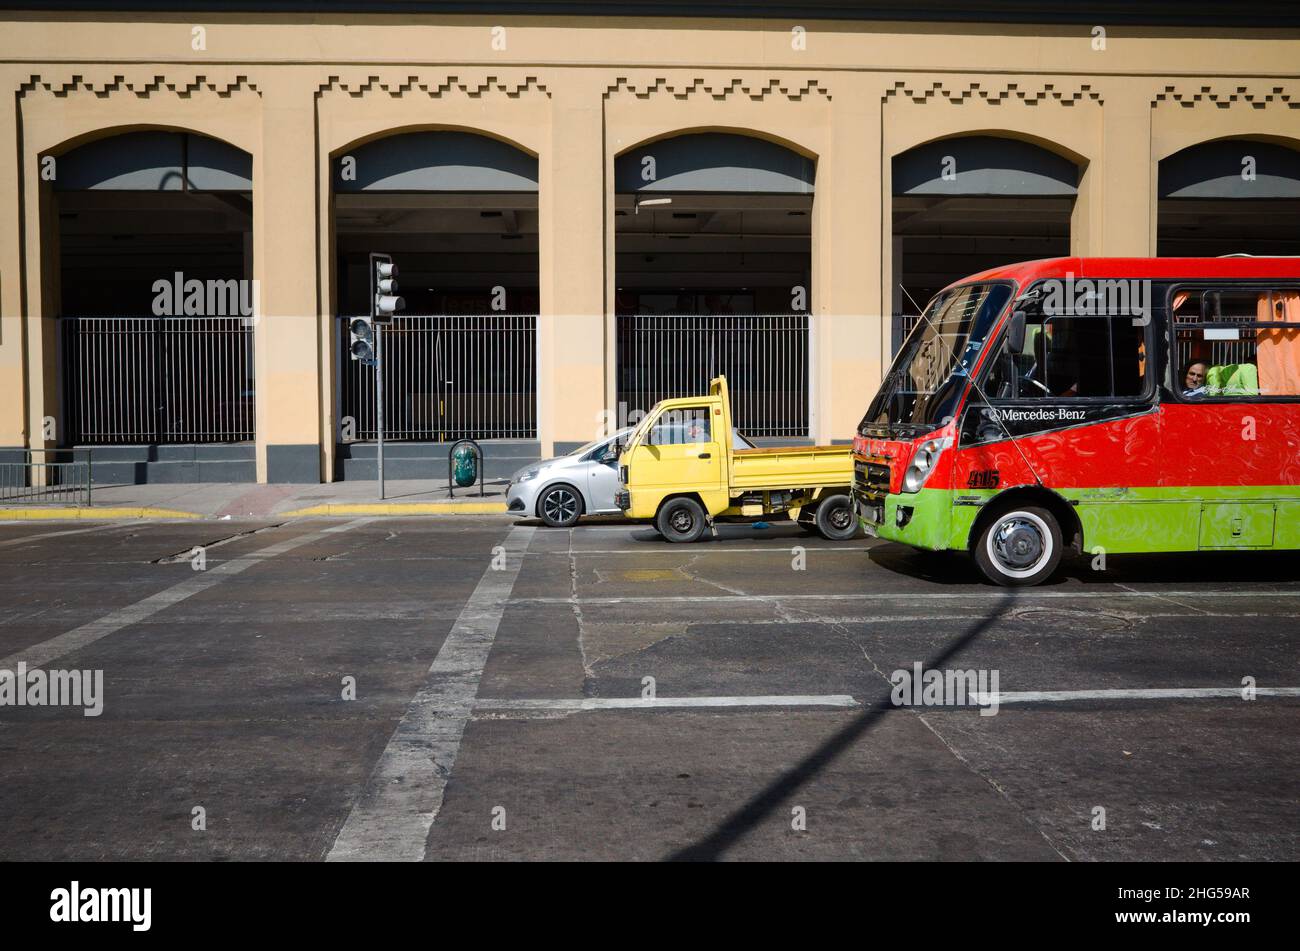 Valparaiso, Cile - Febbraio 2020: Tre veicoli in fila alla fermata vicino al semaforo: Auto privata, camion e autobus pubblico Foto Stock